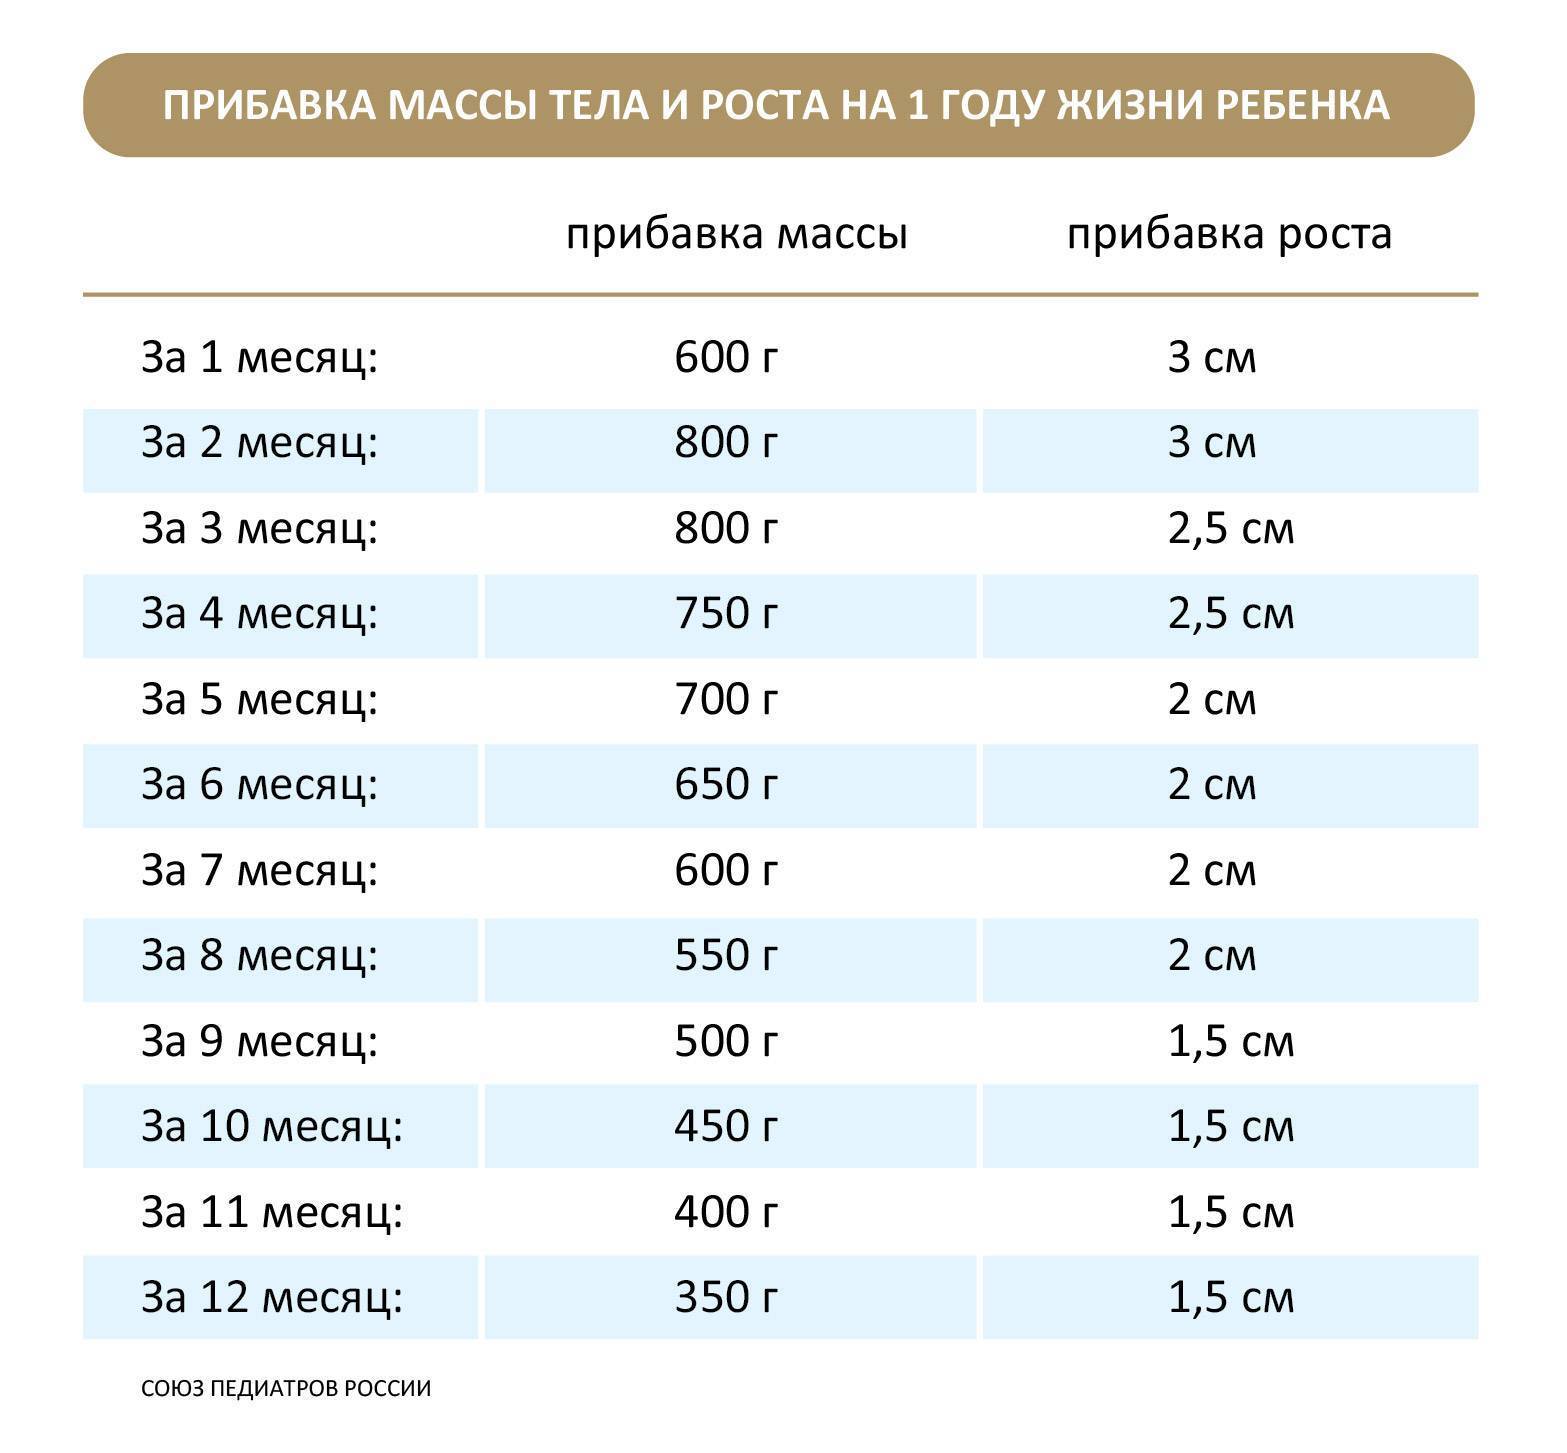 Прибавка в весе у новорожденных: таблица с нормами для мальчиков и девочек по месяца до 1 года, а также сколько должны прибавлять недоношенные дети